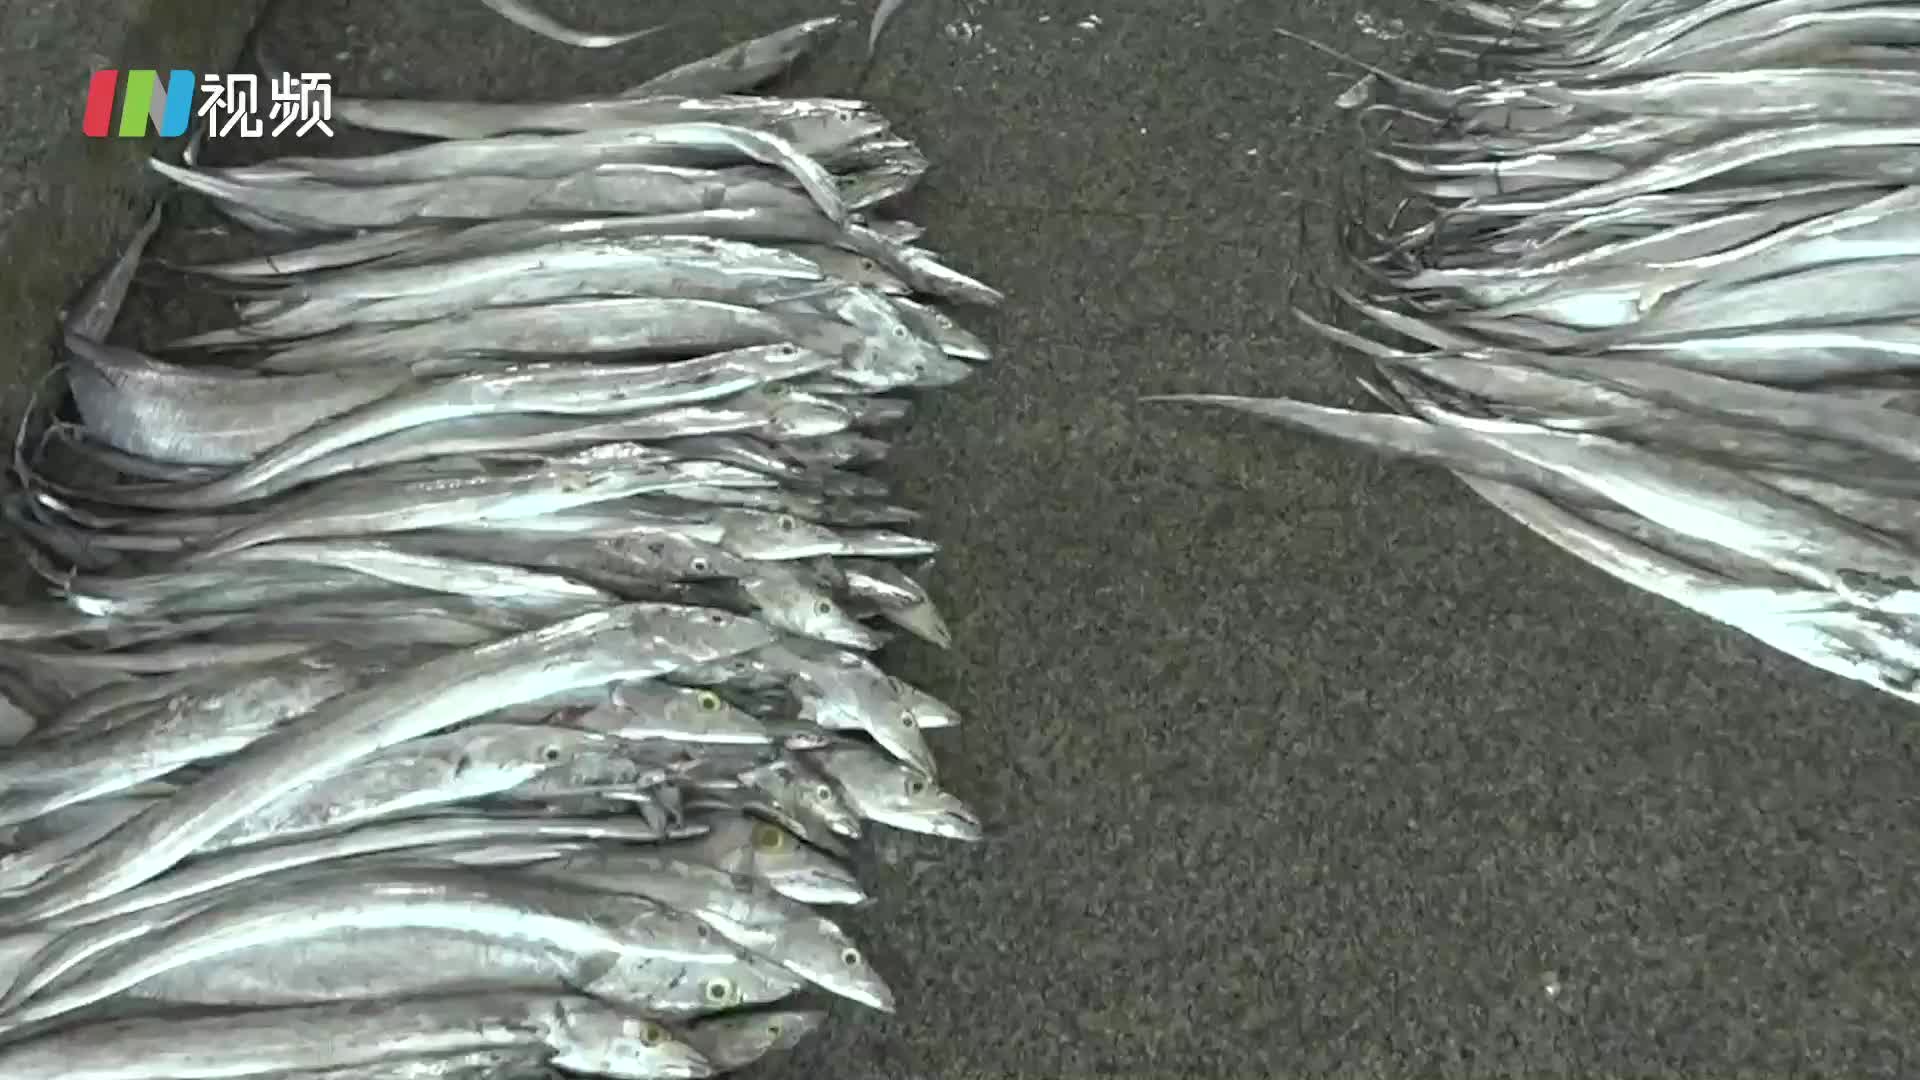 印尼进口冻带鱼外包装检出新冠病毒